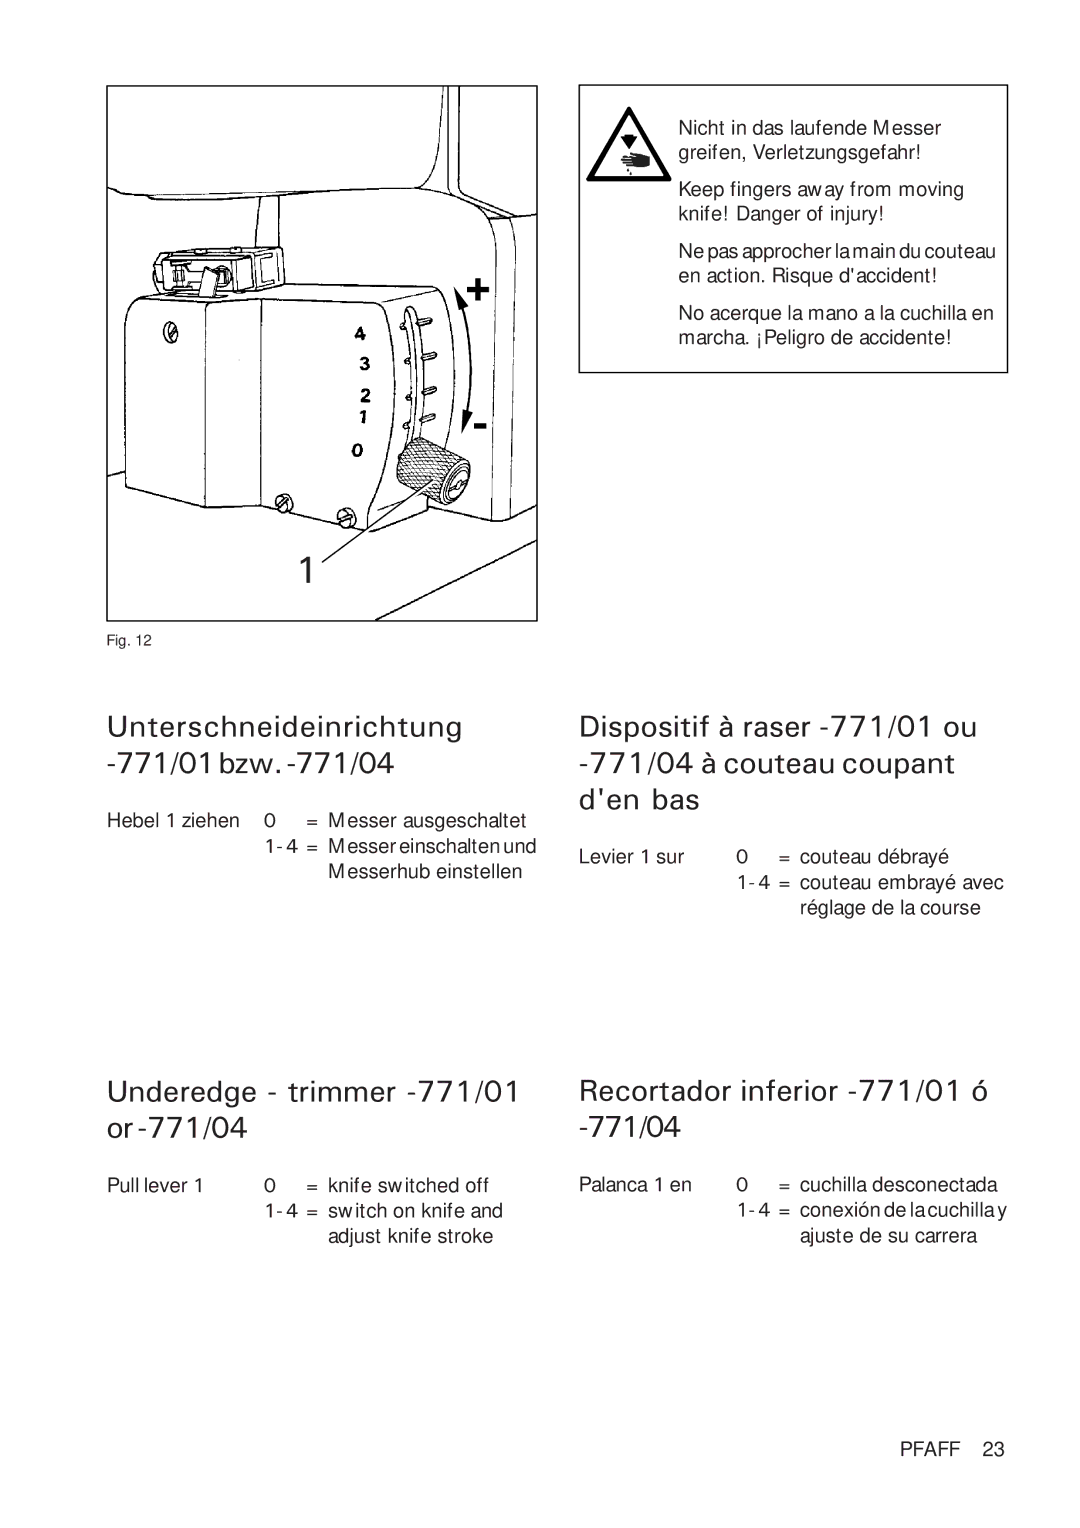 Pfaff 918 instruction manual Unterschneideinrichtung -771/01bzw.-771/04, Underedge trimmer -771/01 or-771/04 